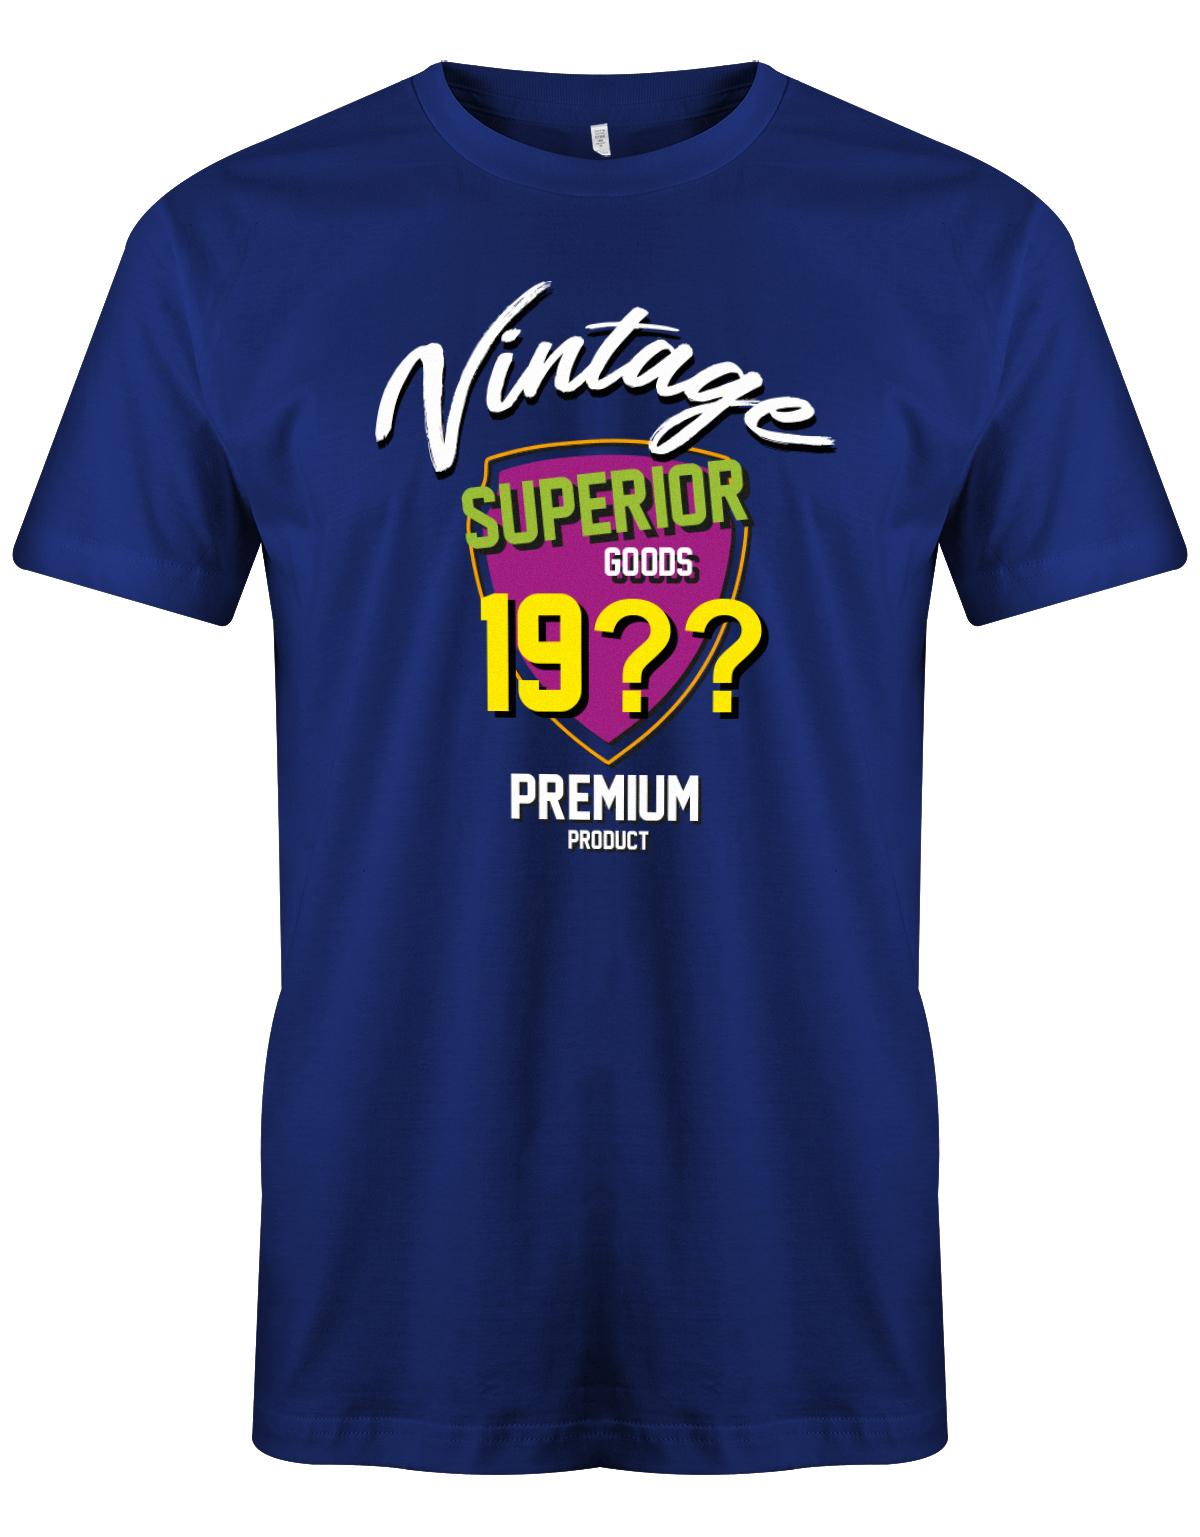 Geburtstag Tshirt für Männer Vintage Superior goods Personalisiert mit Geburtsjahr Premium Product Royalblau